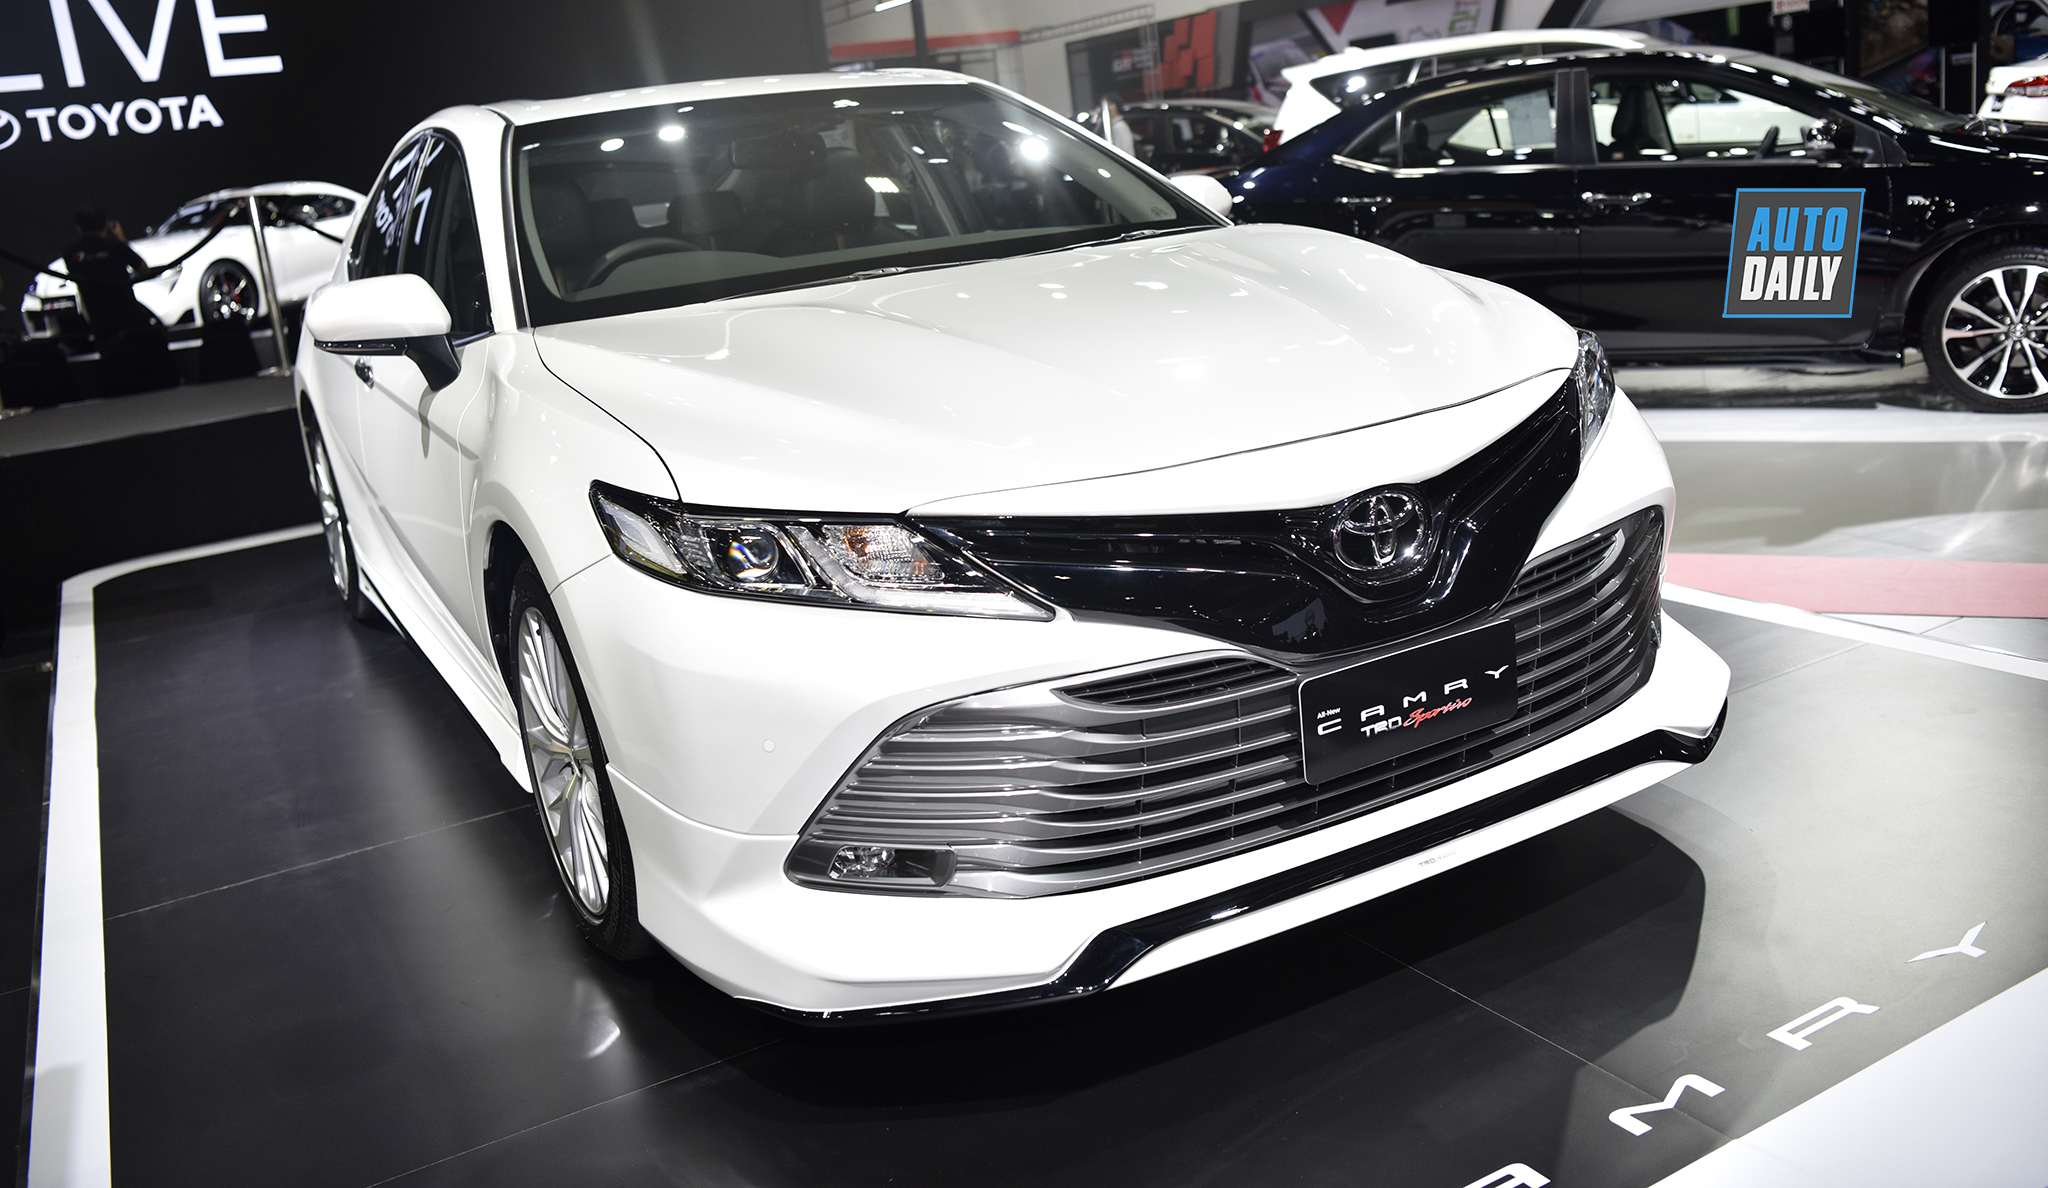 Toyota Camry 2019 tại Bangkok Motor Show. Tháng sau, mẫu xe này cũng ra mắt tại Việt Nam.